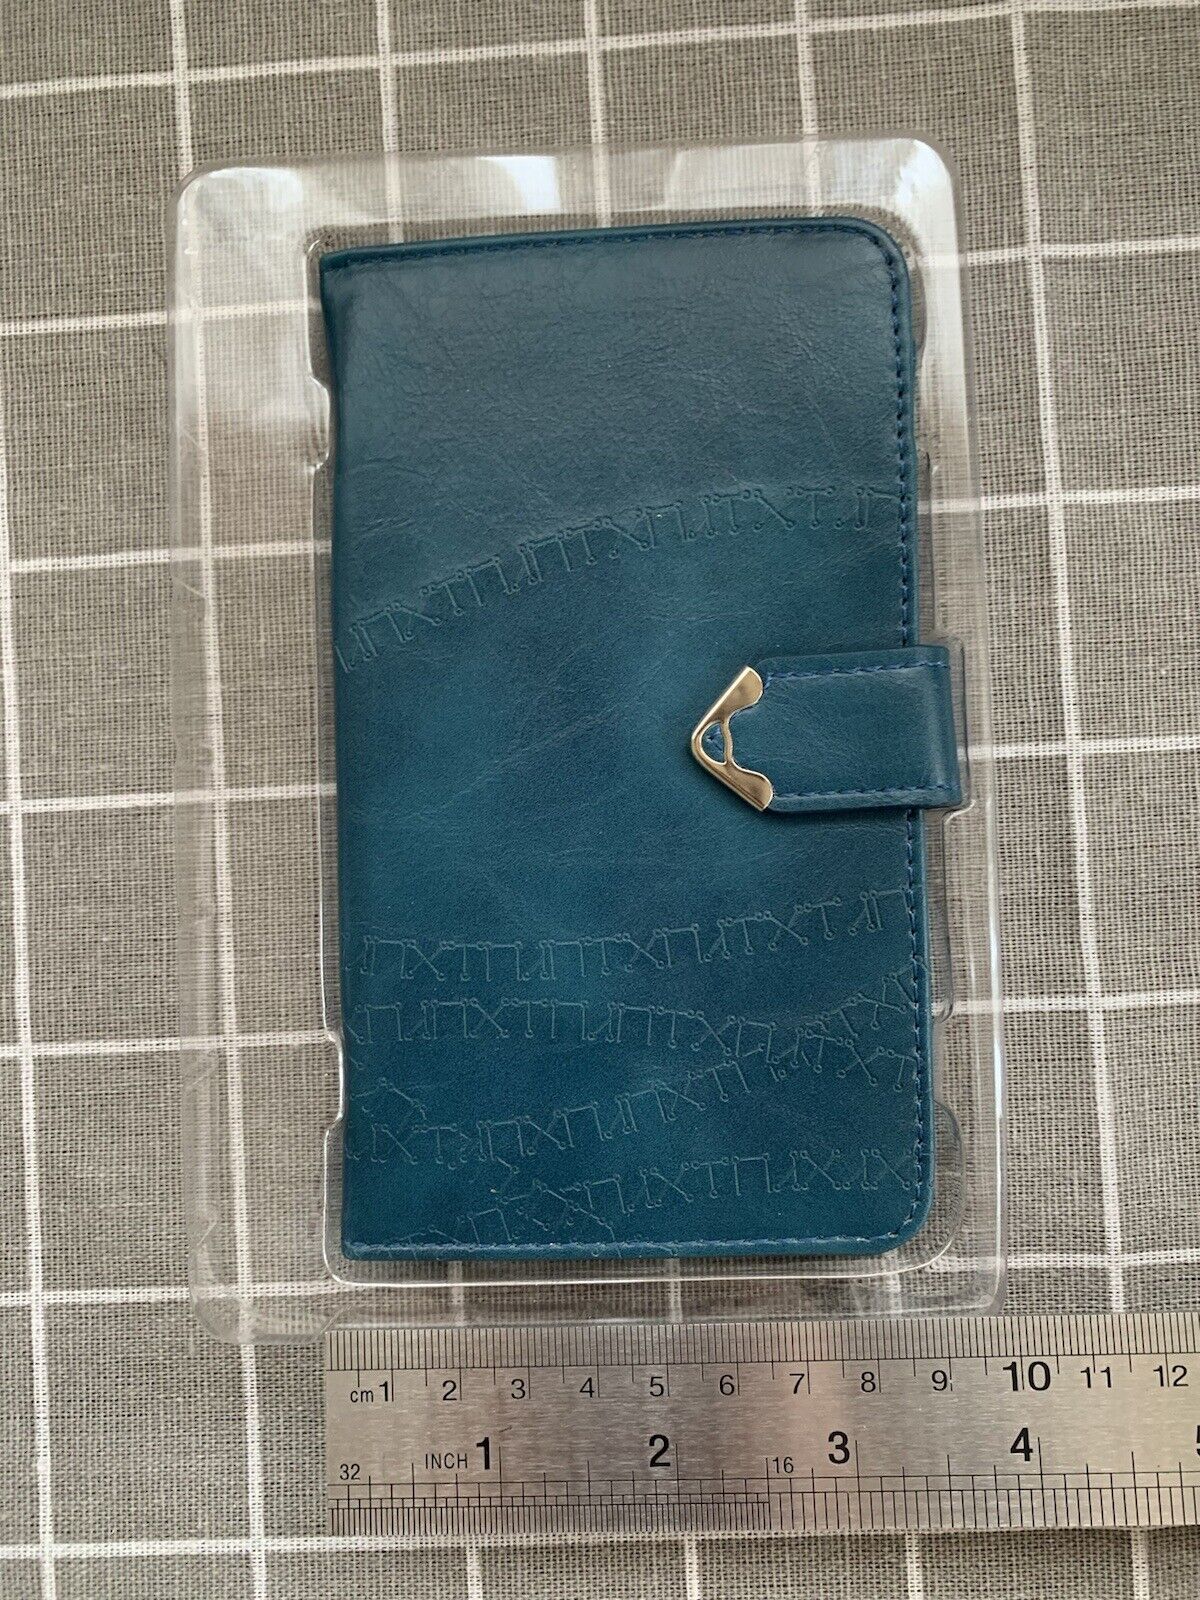 Sqaure Enix Official Nier Replicant Gestalt Leather Wallet Phone Case